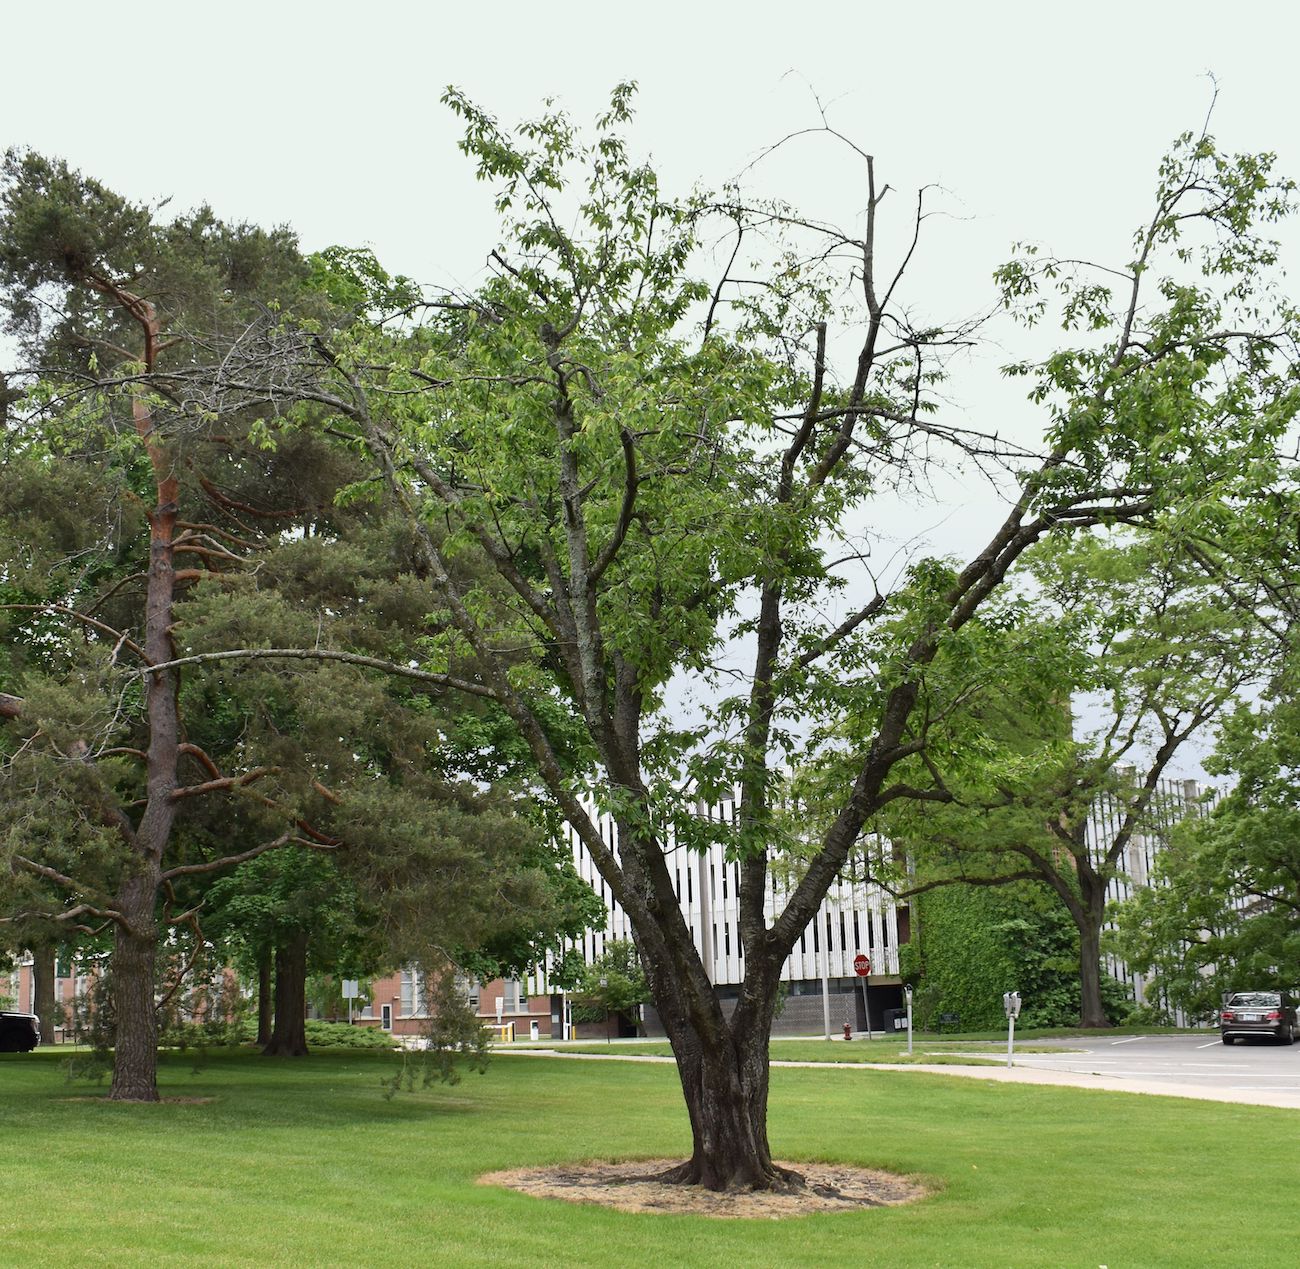 Prunus avium cherry tree on MSU’s campus.